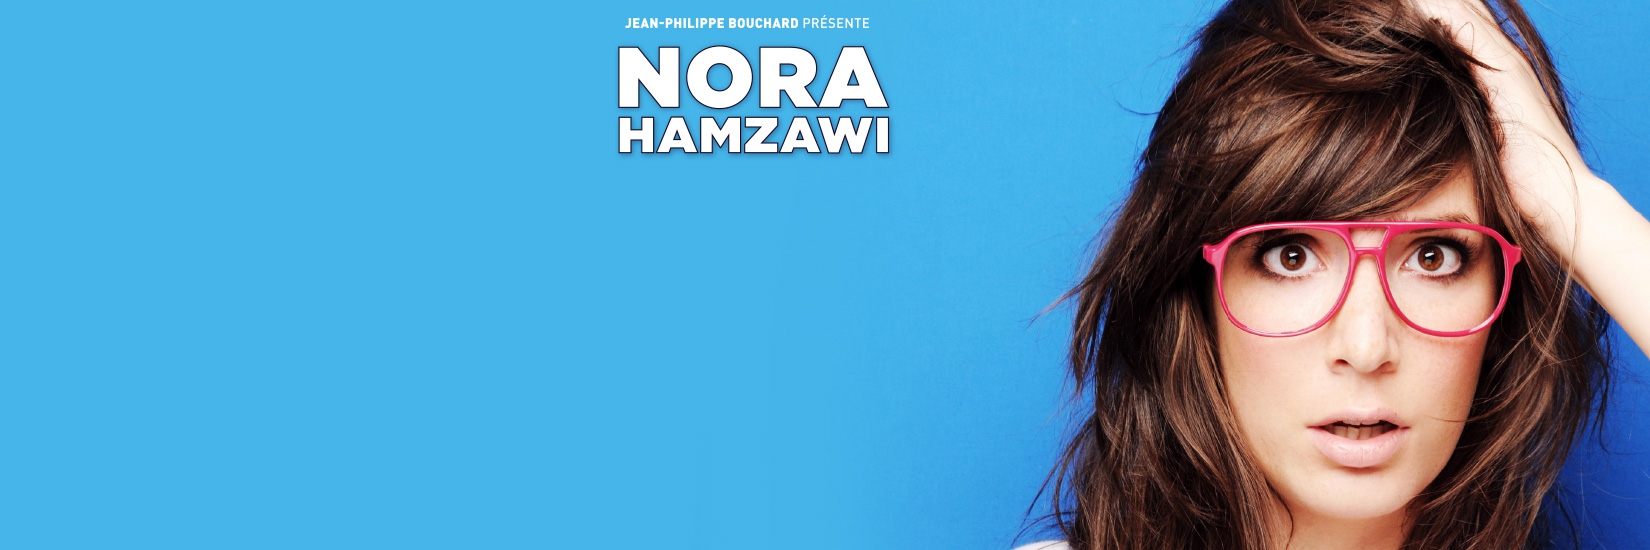 NORA Nora Hamzawi au République jusqu'au 29 avril 2017